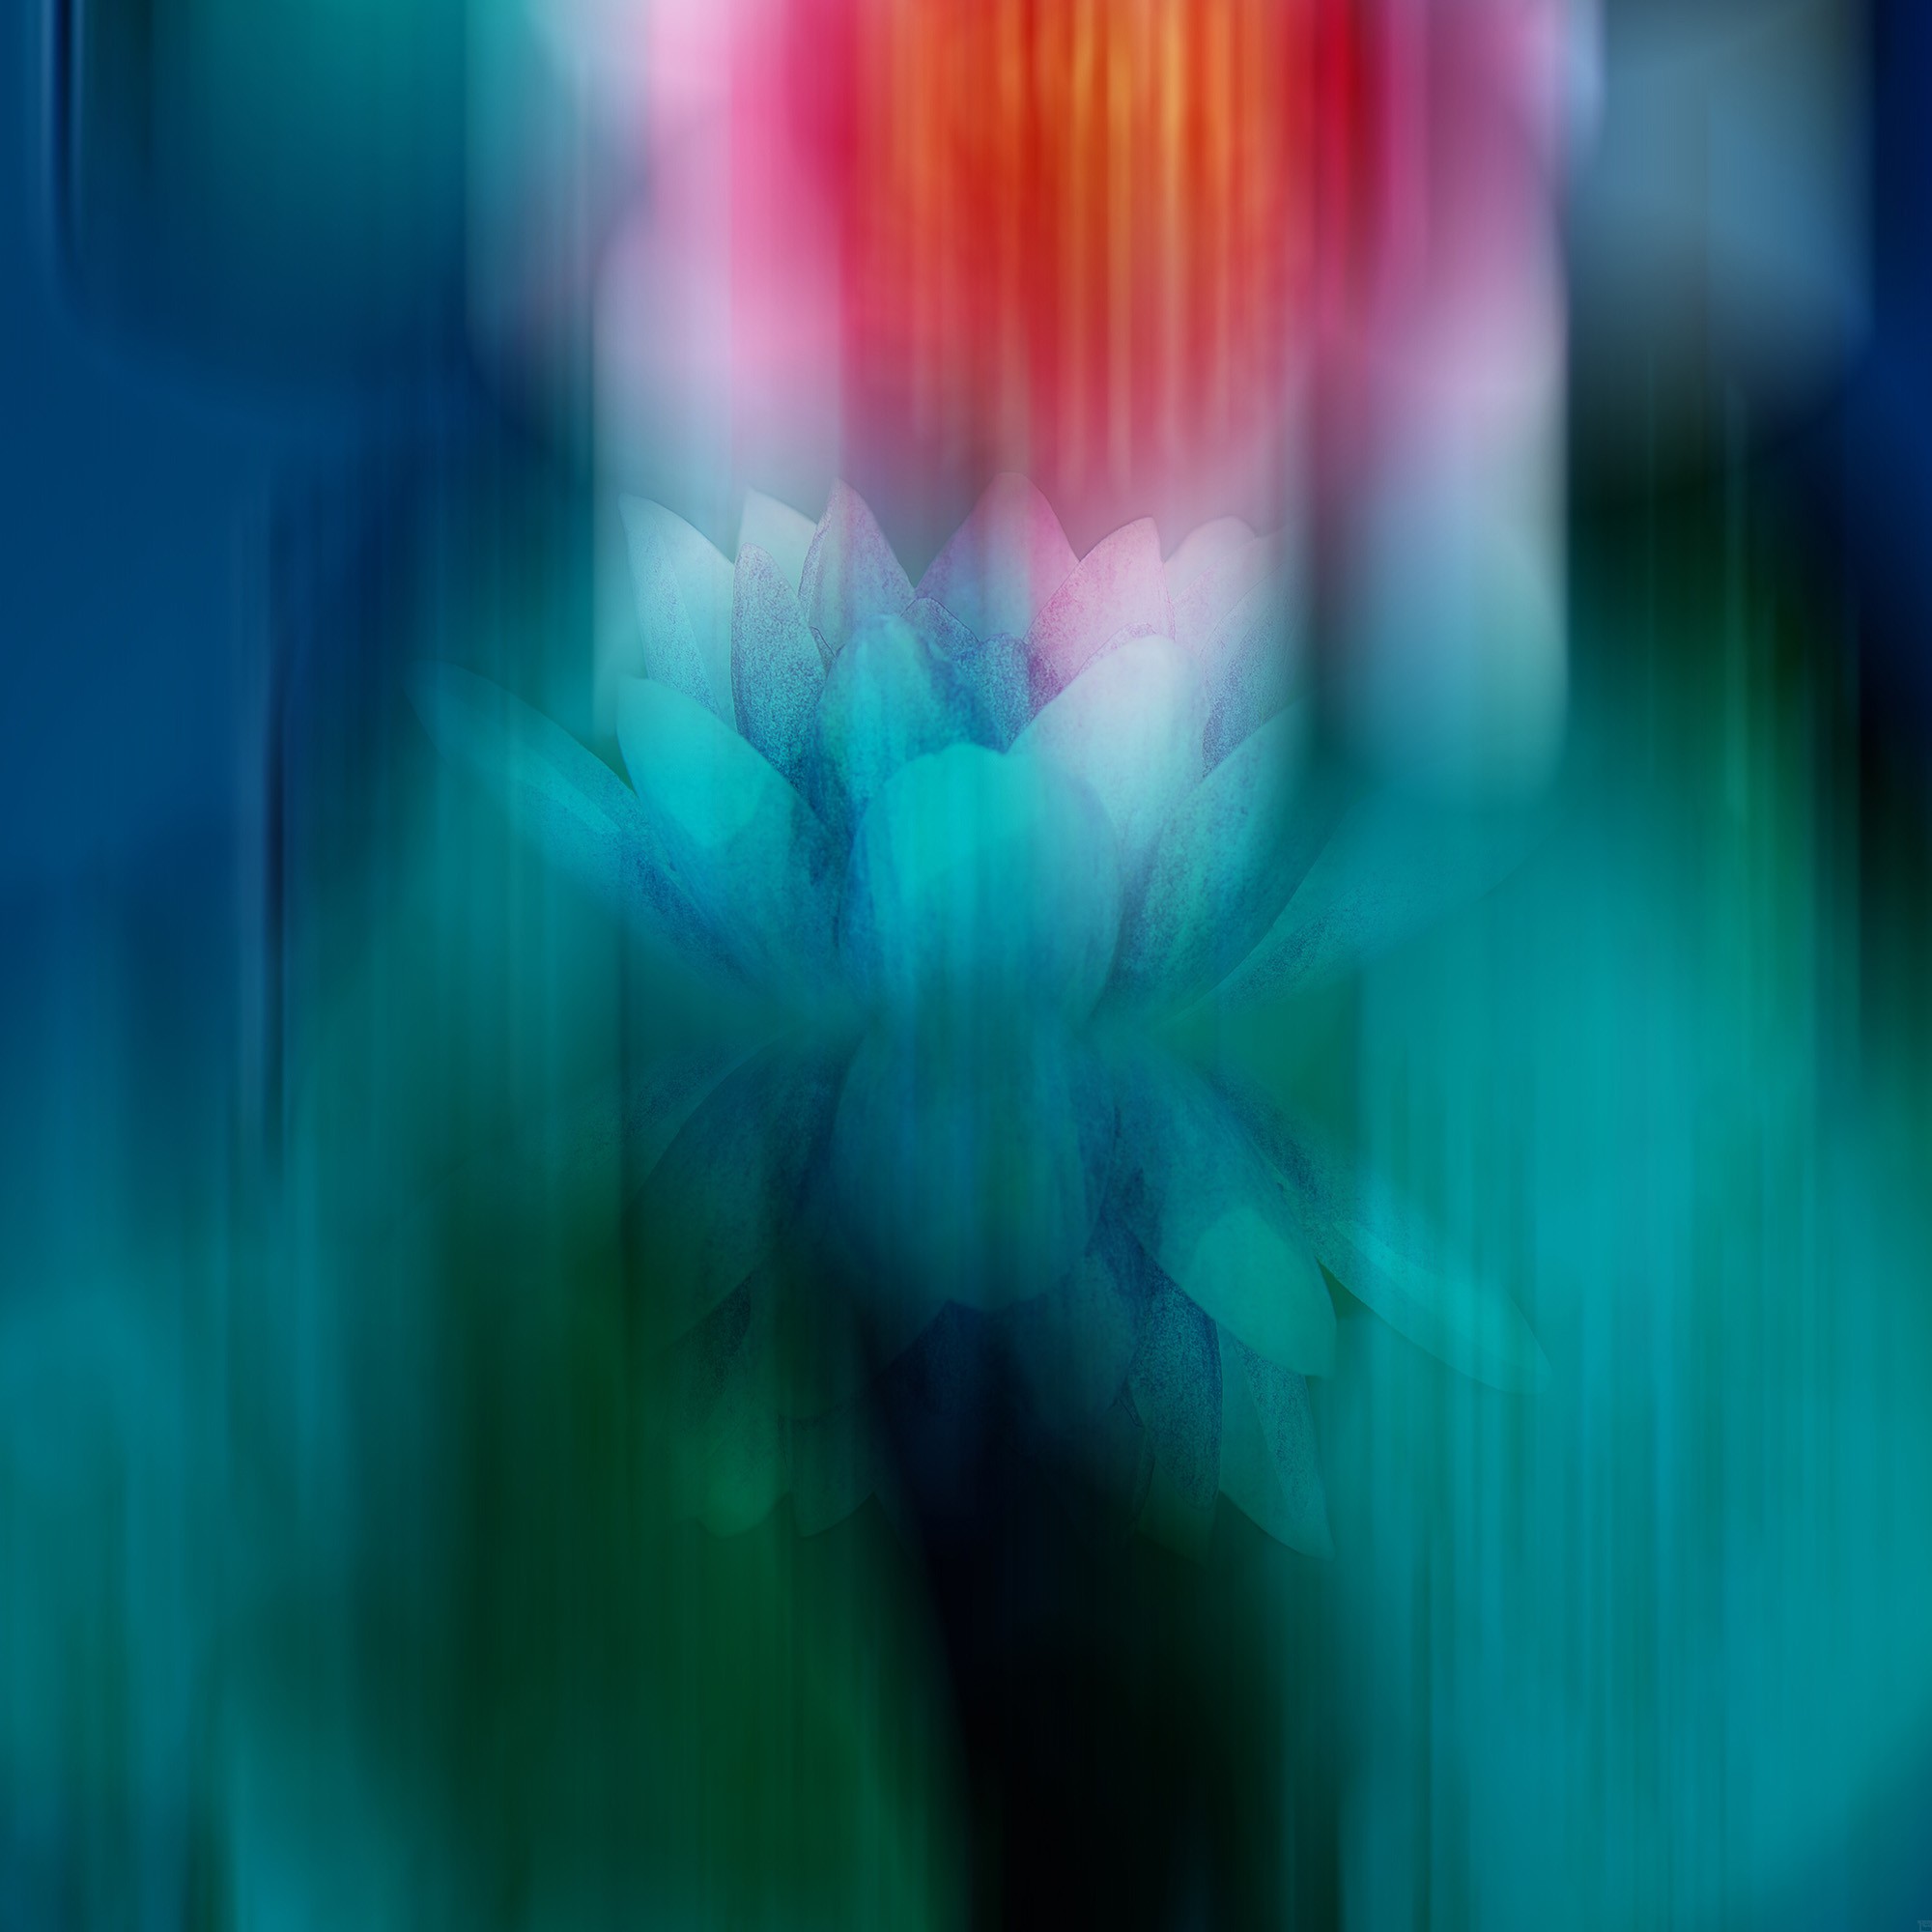 Mysterious Lotus | Fotografie von Theresa Lambrecht, Direkter Fotodruck auf Alu-Dibond, Butlerfinish, limitierte Edition